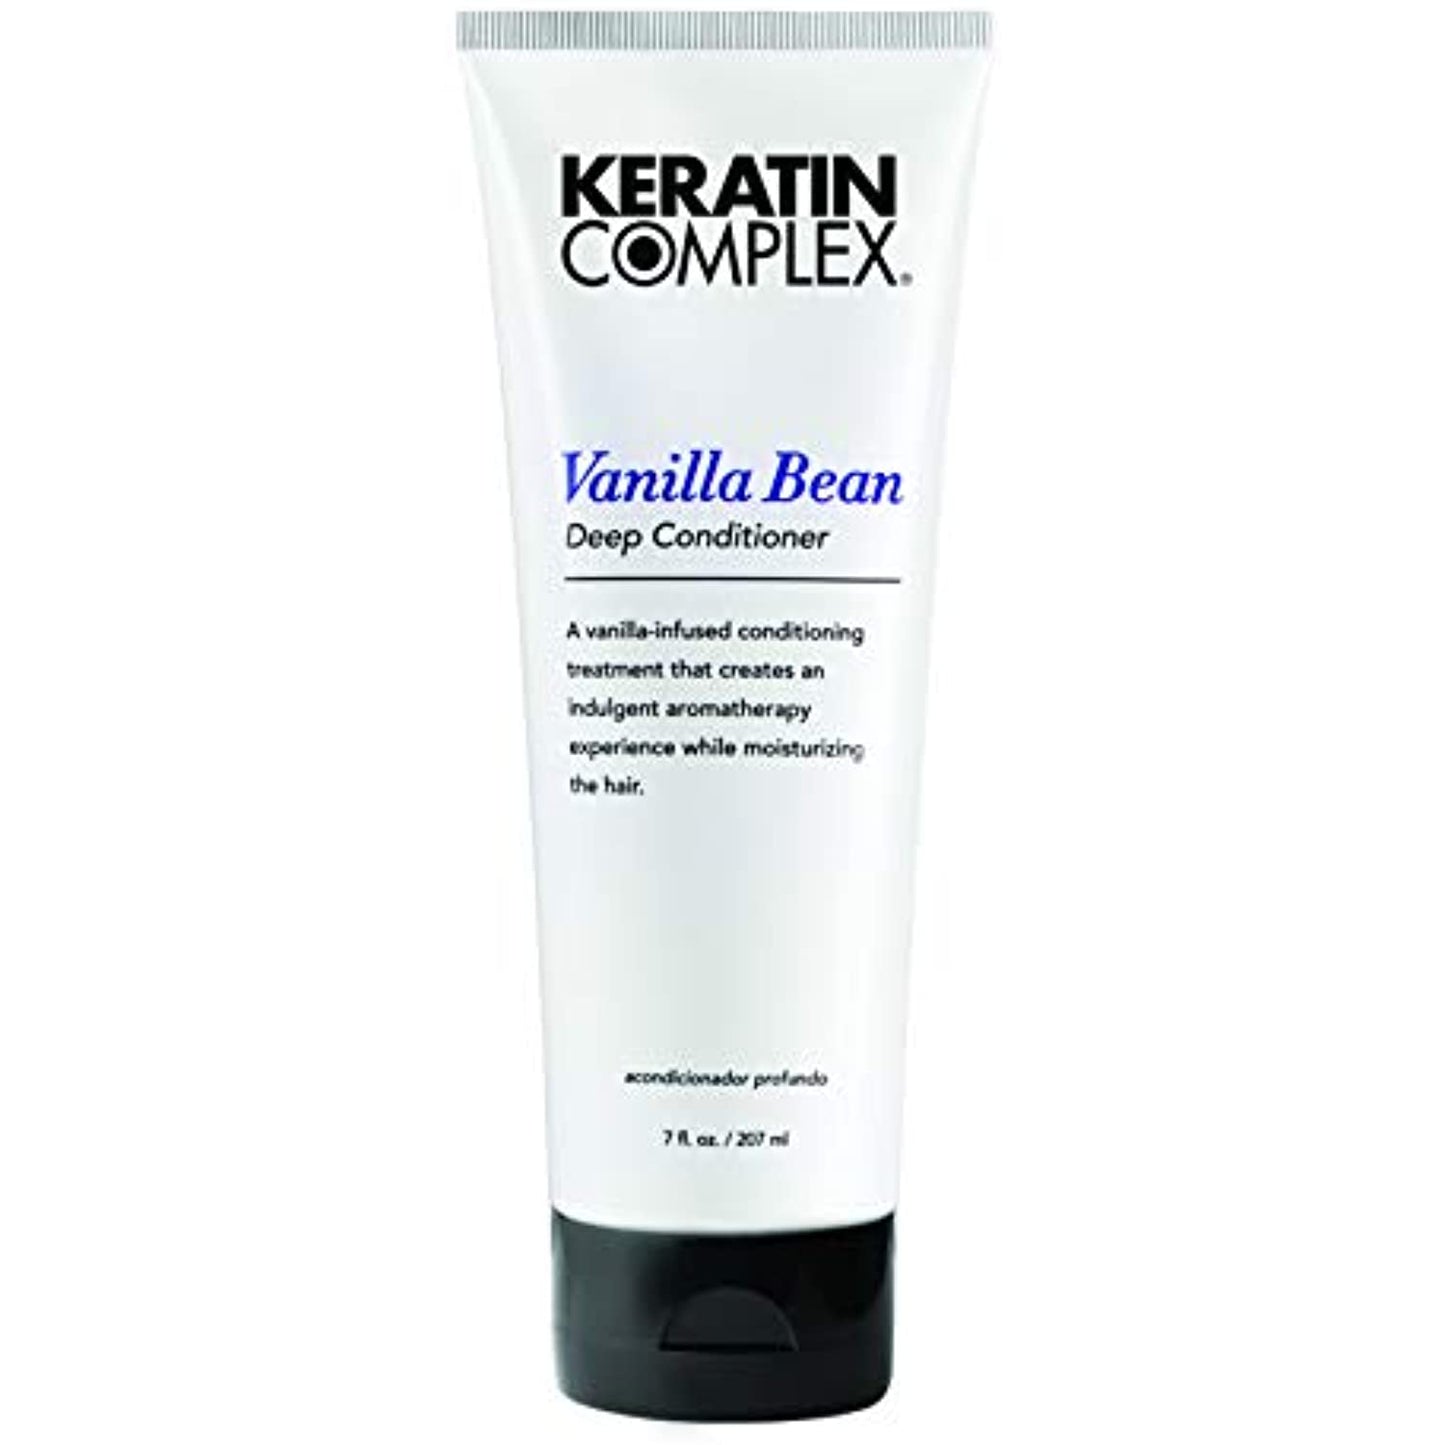 Keratin Complex Vanilla Bean Deep Conditioner, 7 Oz